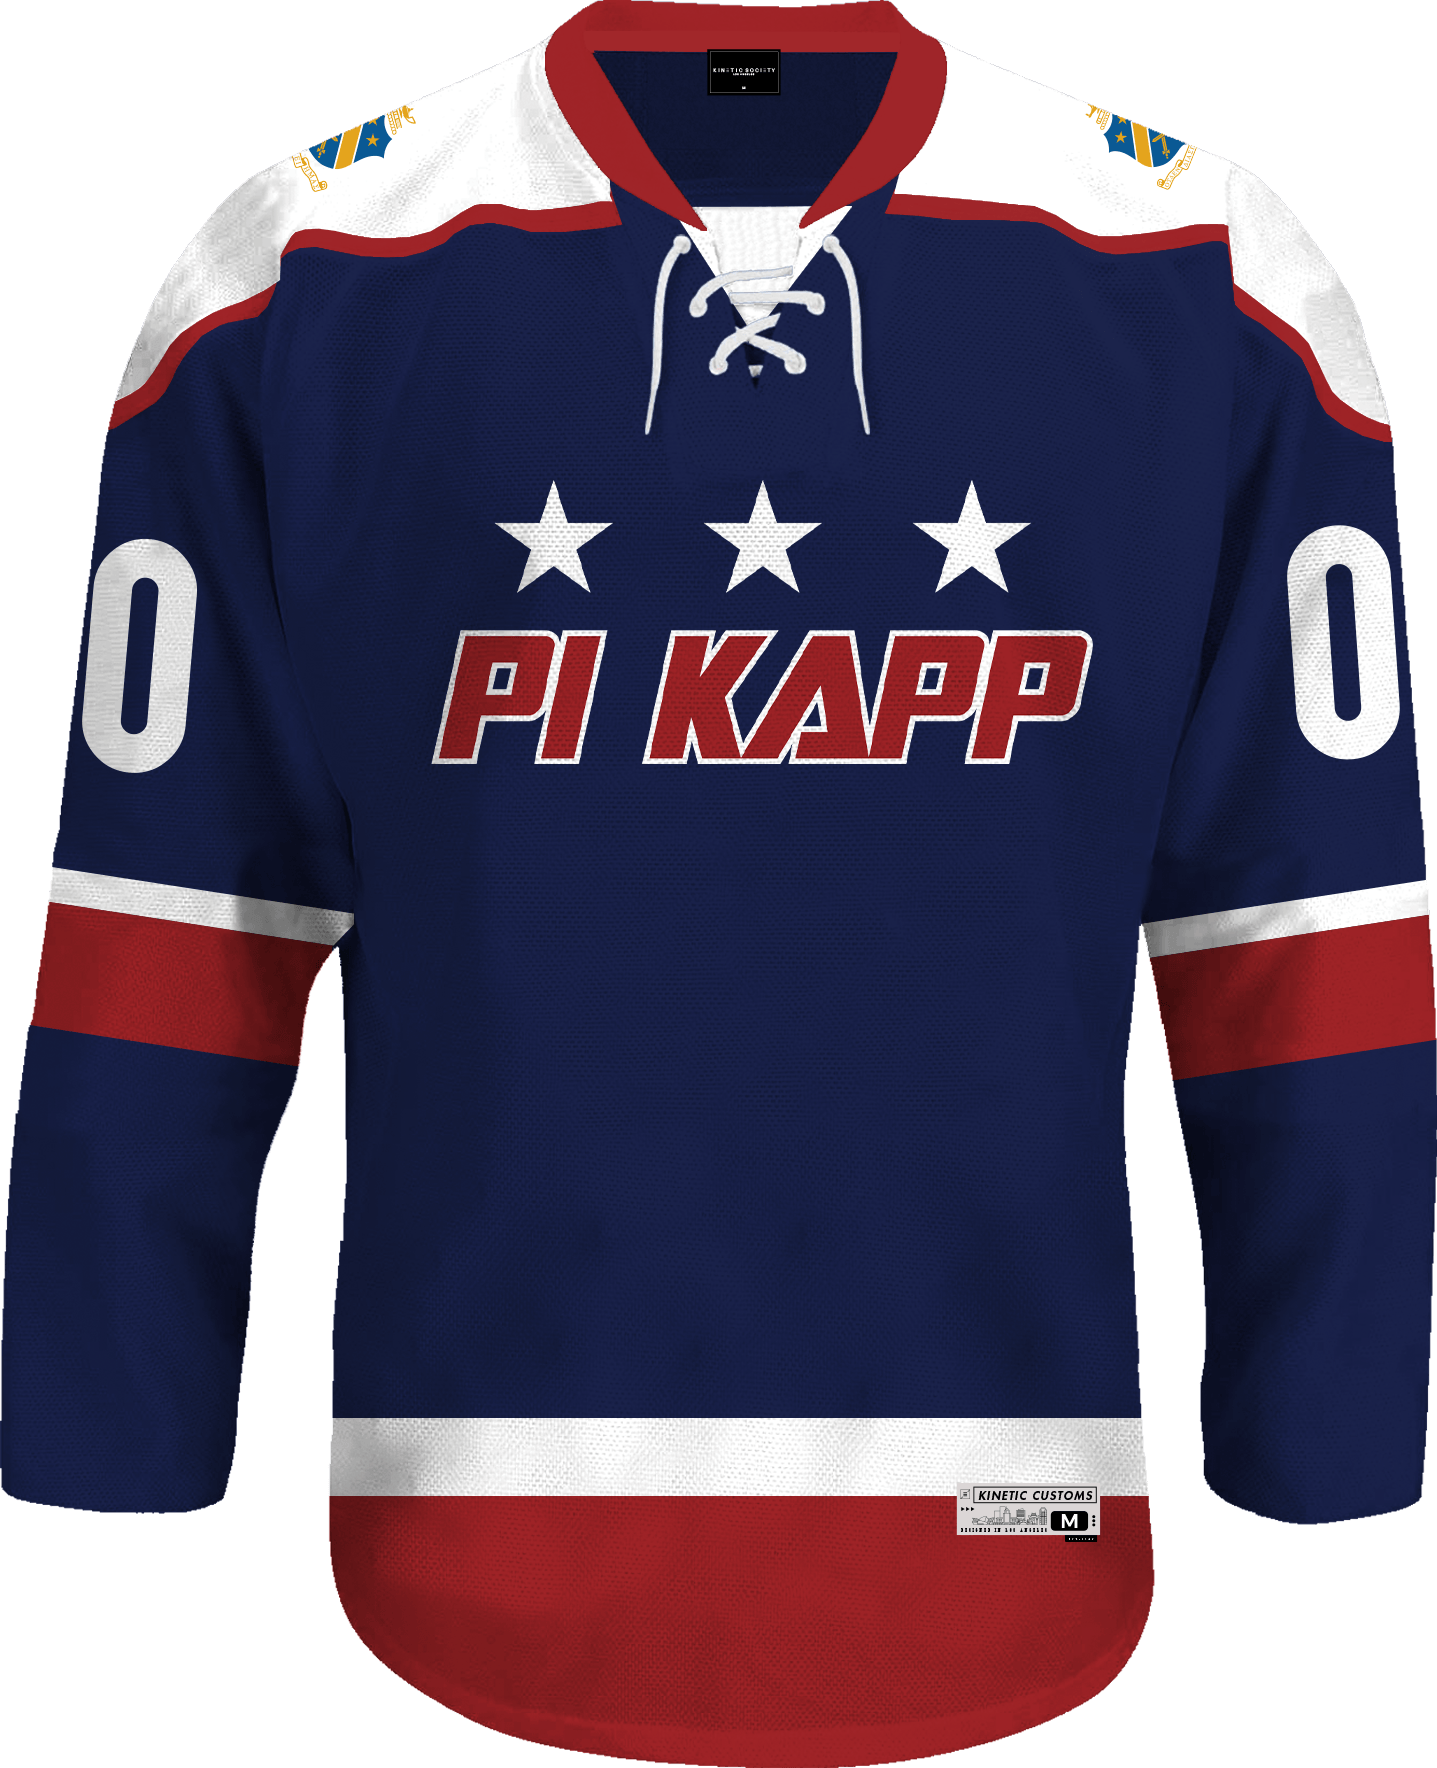 Pi Kappa Phi - Fame Hockey Jersey Hockey Kinetic Society LLC 